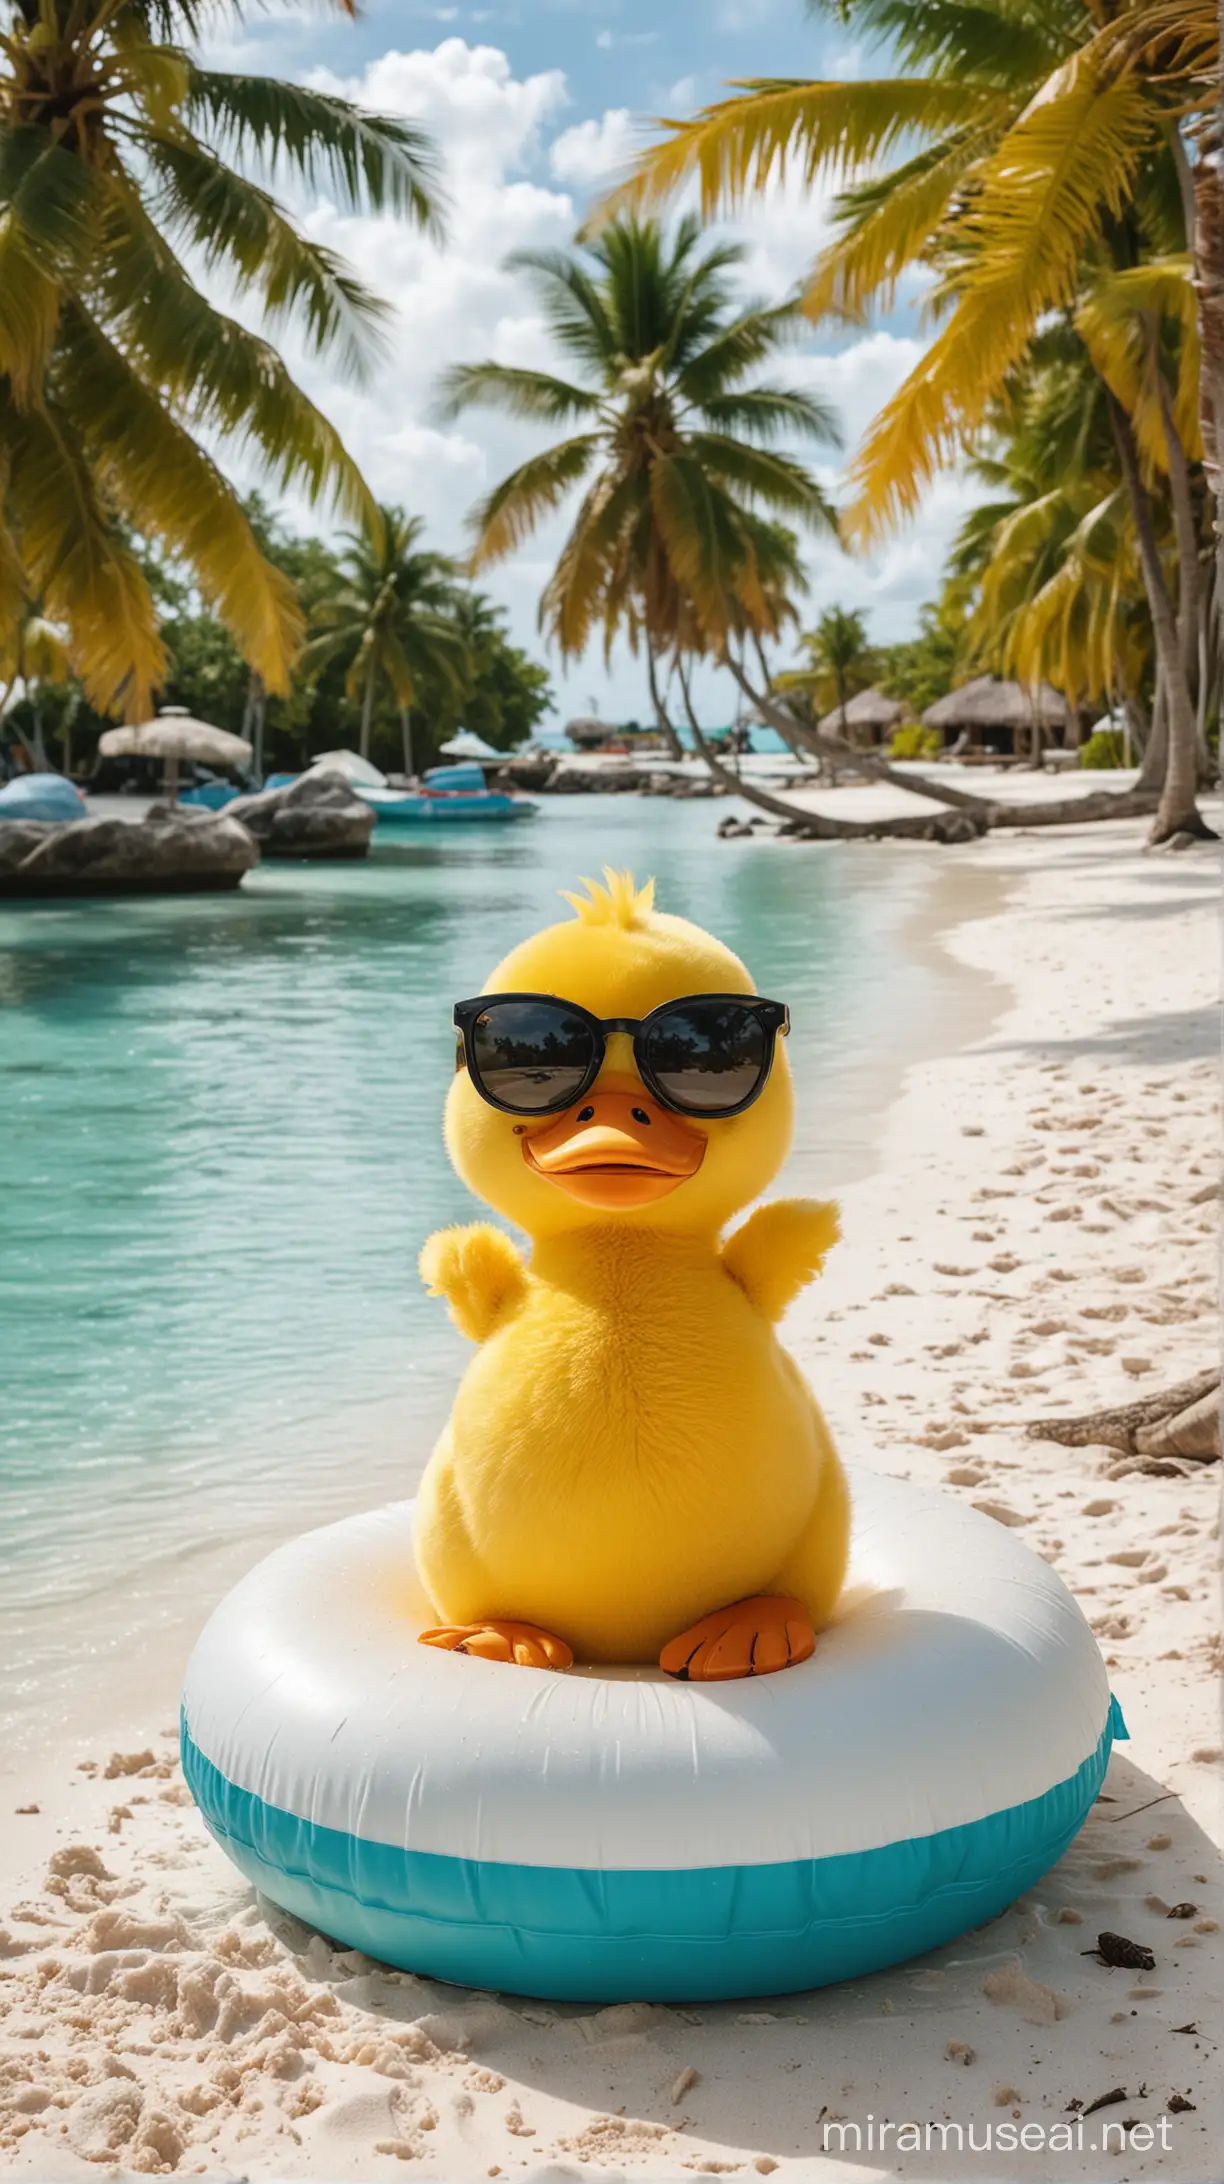 Котенок на Мальдивах на фоне бирюзовая лагуна пальмы кокосы у него рядом надувной круг в виде желтой уточки он лежит на белоснежном песочке на нем черные солнцезащитные очки 
